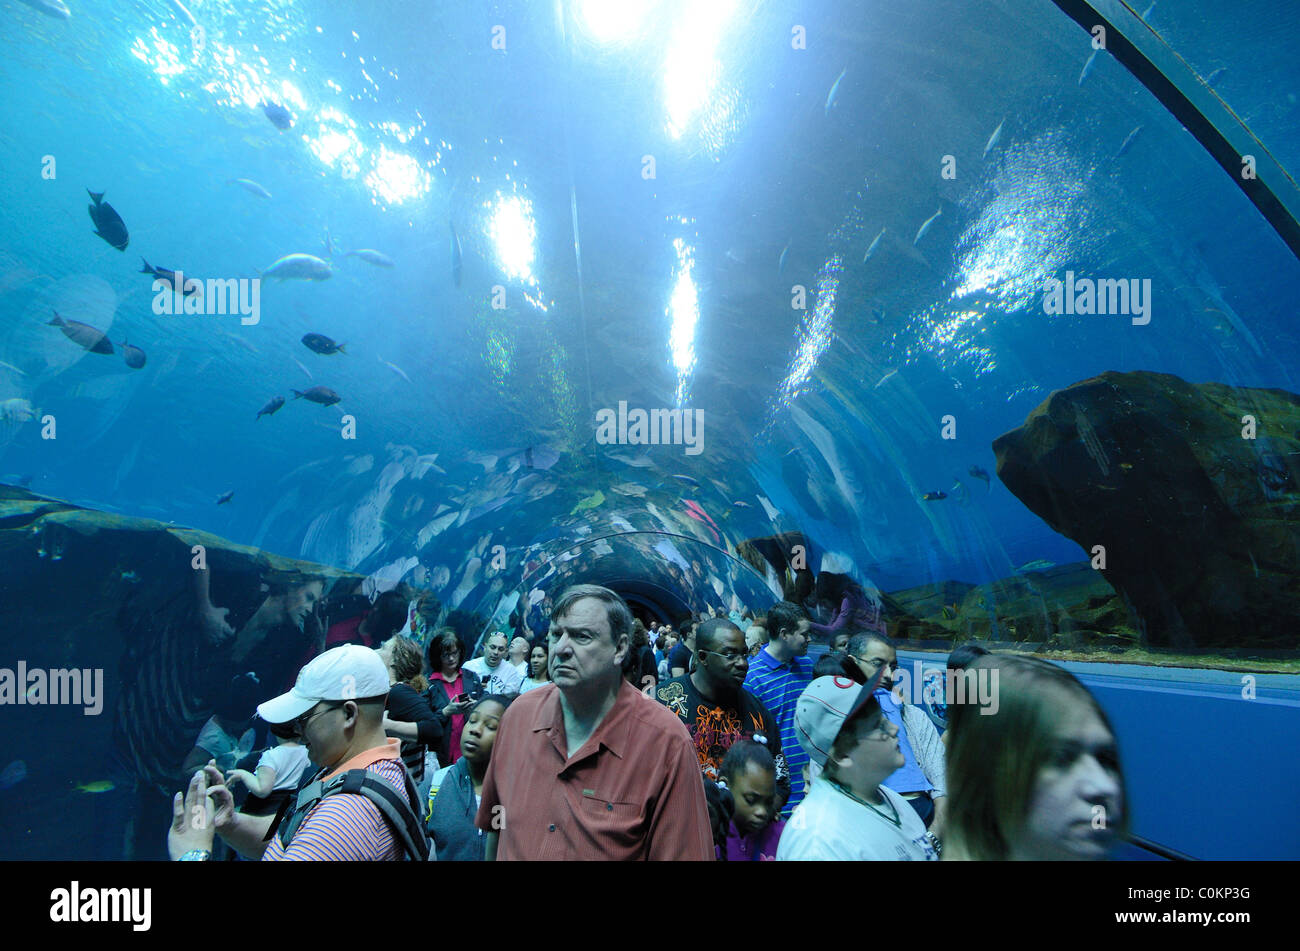 The Georgia Aquarium, the world's largest aquarium, in Atlanta, Georgia. February 20, 2011. Stock Photo